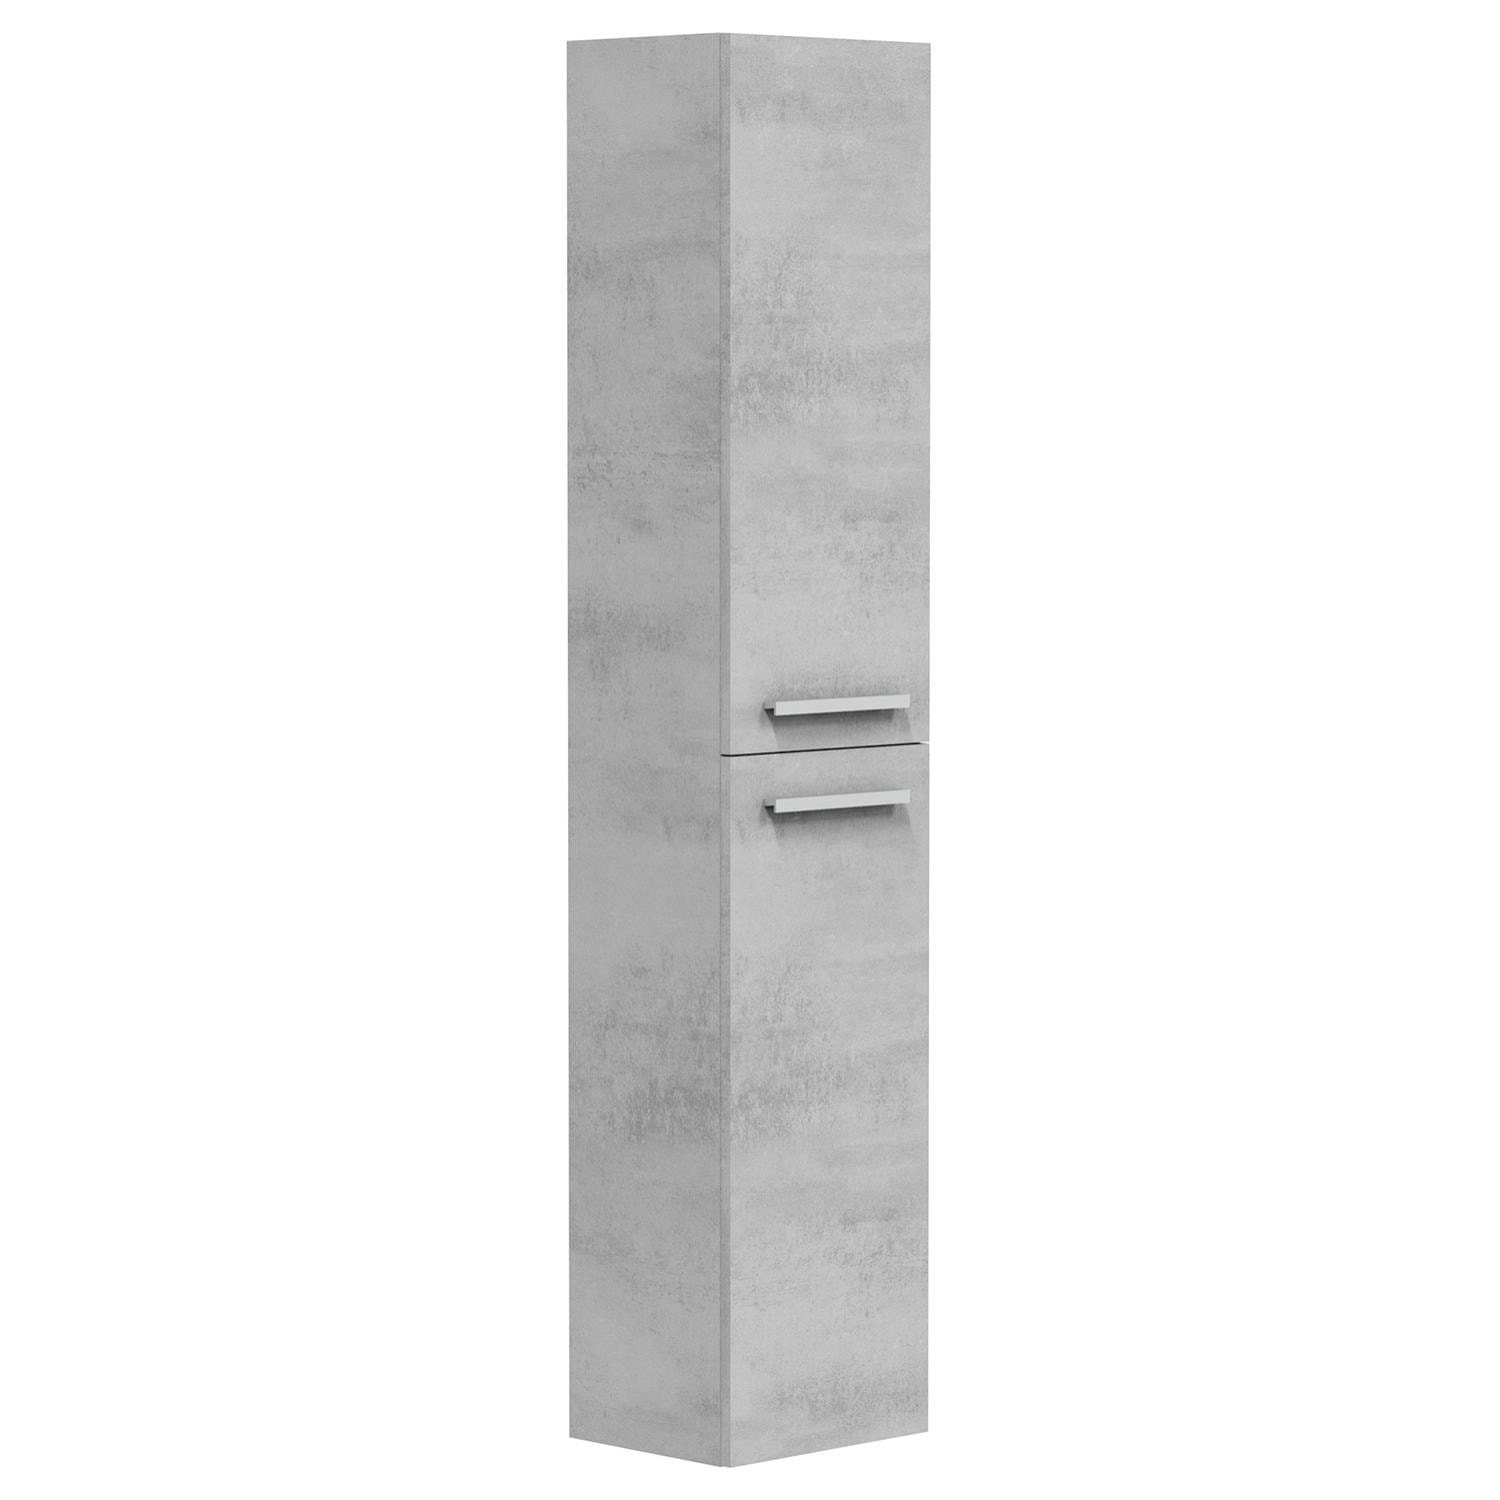 Columna de baño Alise 2p color Cemento, 30 cm (Ancho) x 25 cm (Fondo) x 150 cm (Alto)